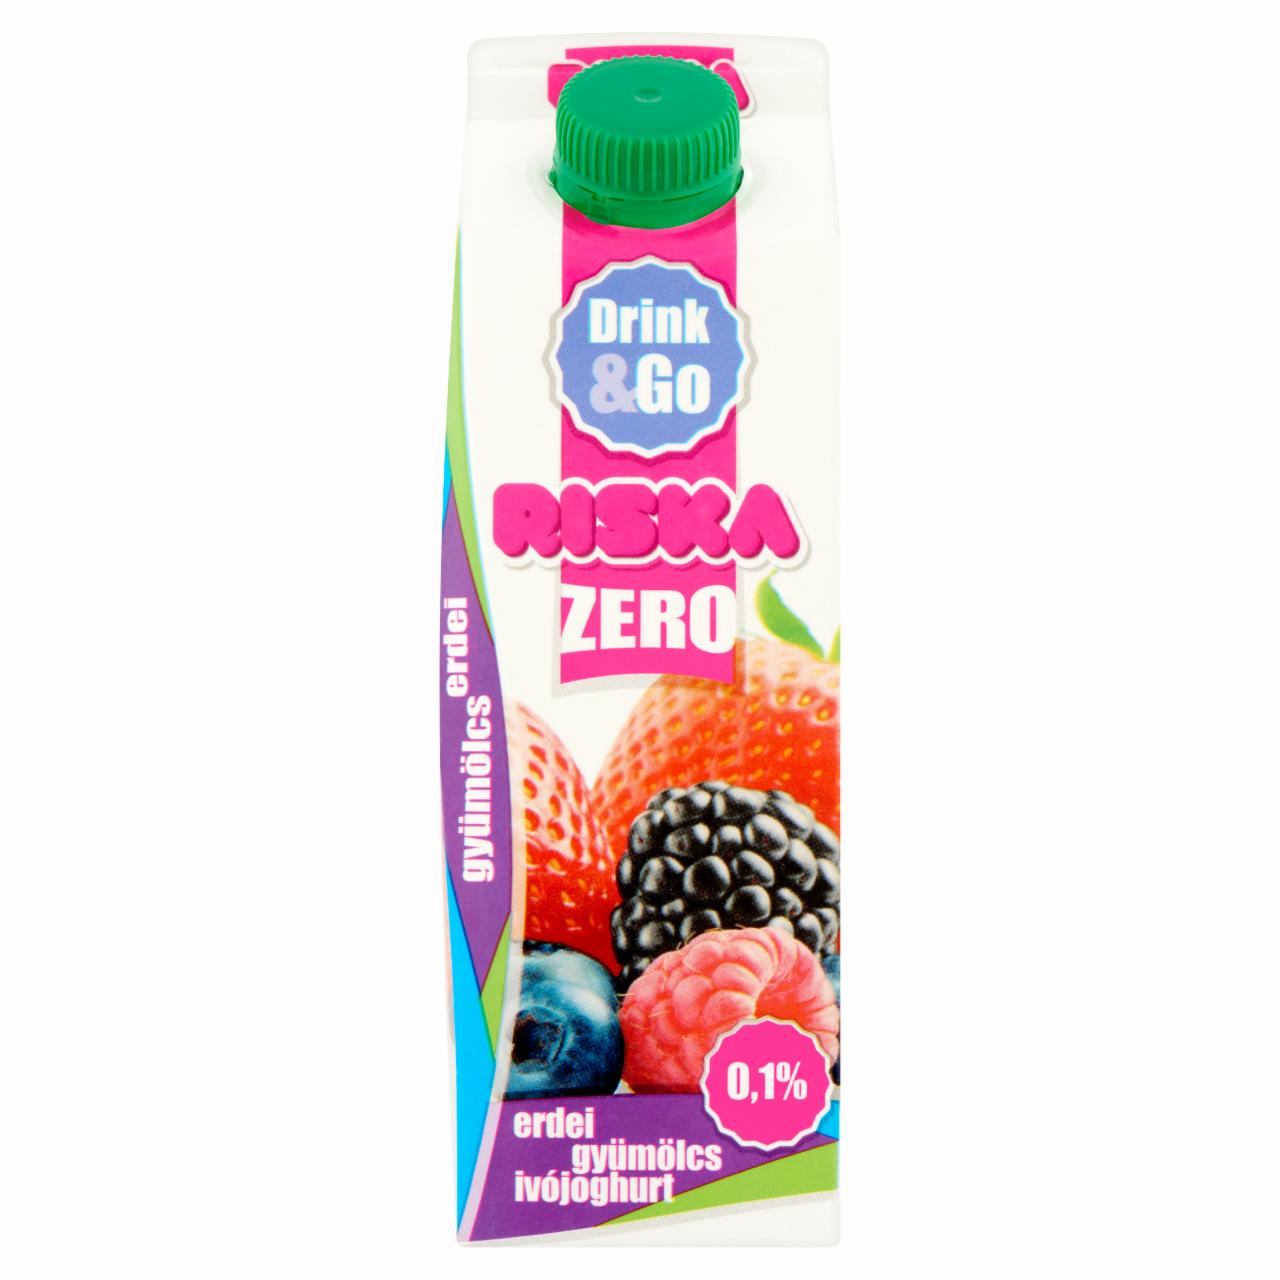 Képek - Riska Drink & Go Zero erdei gyümölcs élőflórás, laktózmentes sovány ivójoghurt 450 g